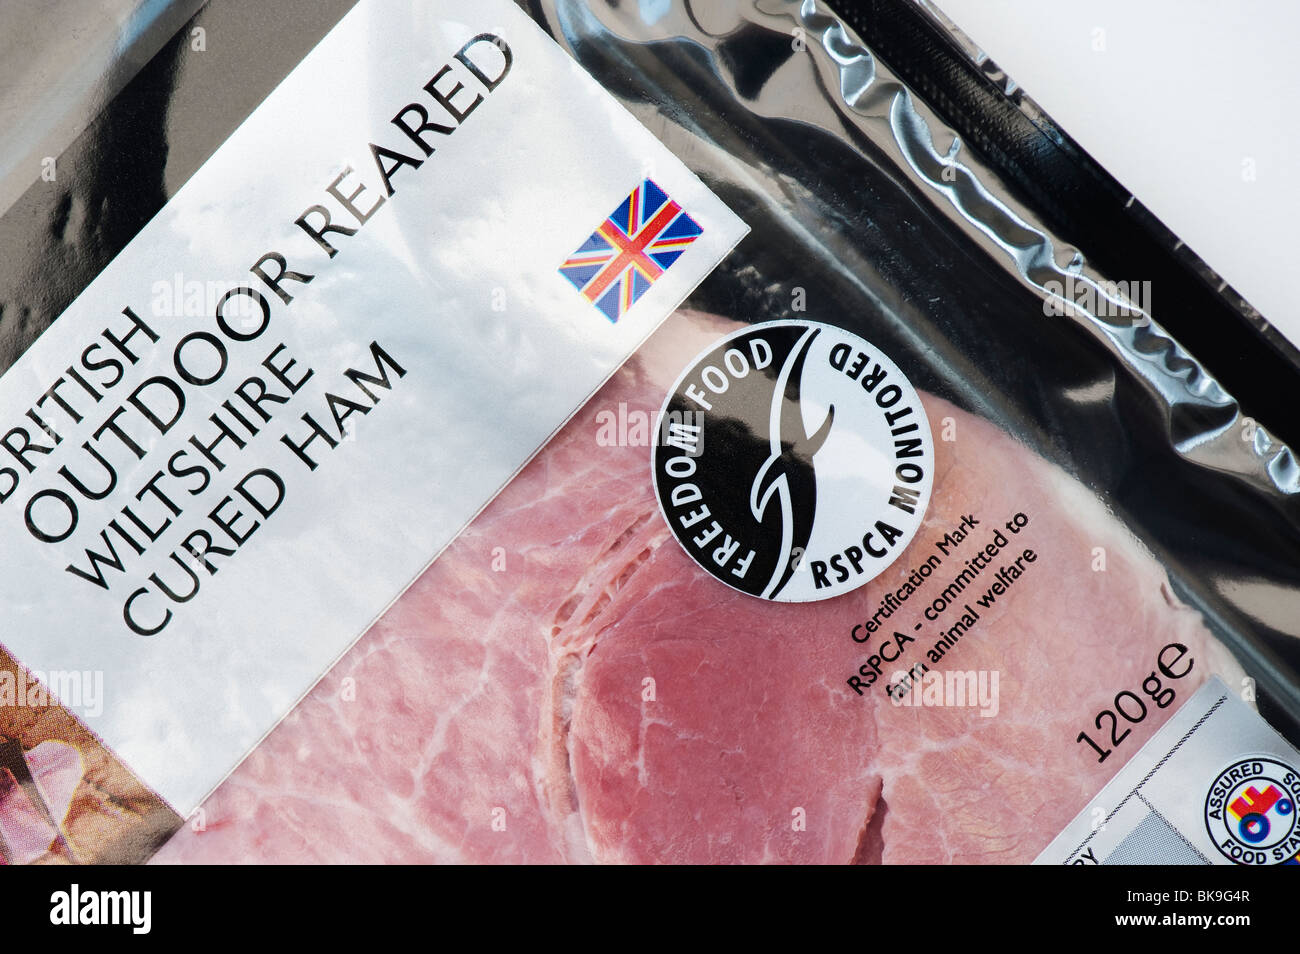 La viande britannique étiquette de l'emballage. 'Liberté' 'Nourriture' surveillé la RSPCA Banque D'Images